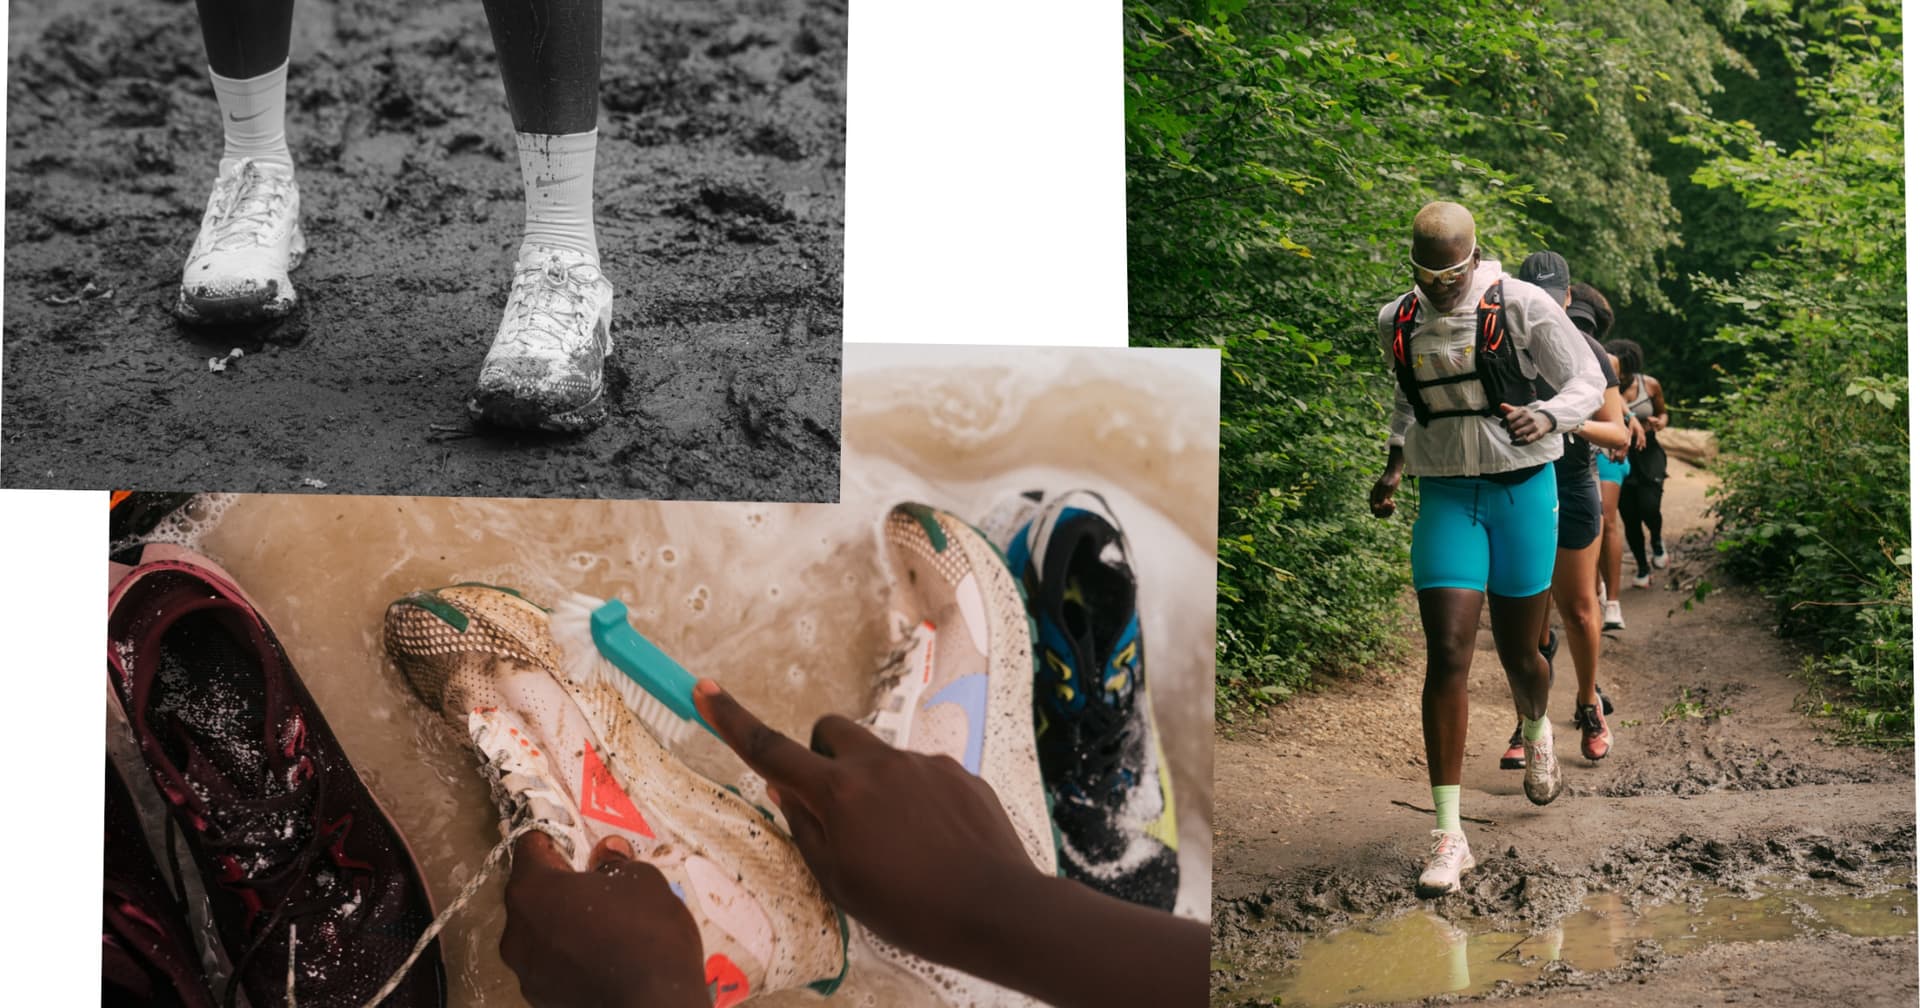 Zapatillas barefoot para correr: ¿Qué son y cuáles son sus beneficios? »  Descubre Belleza